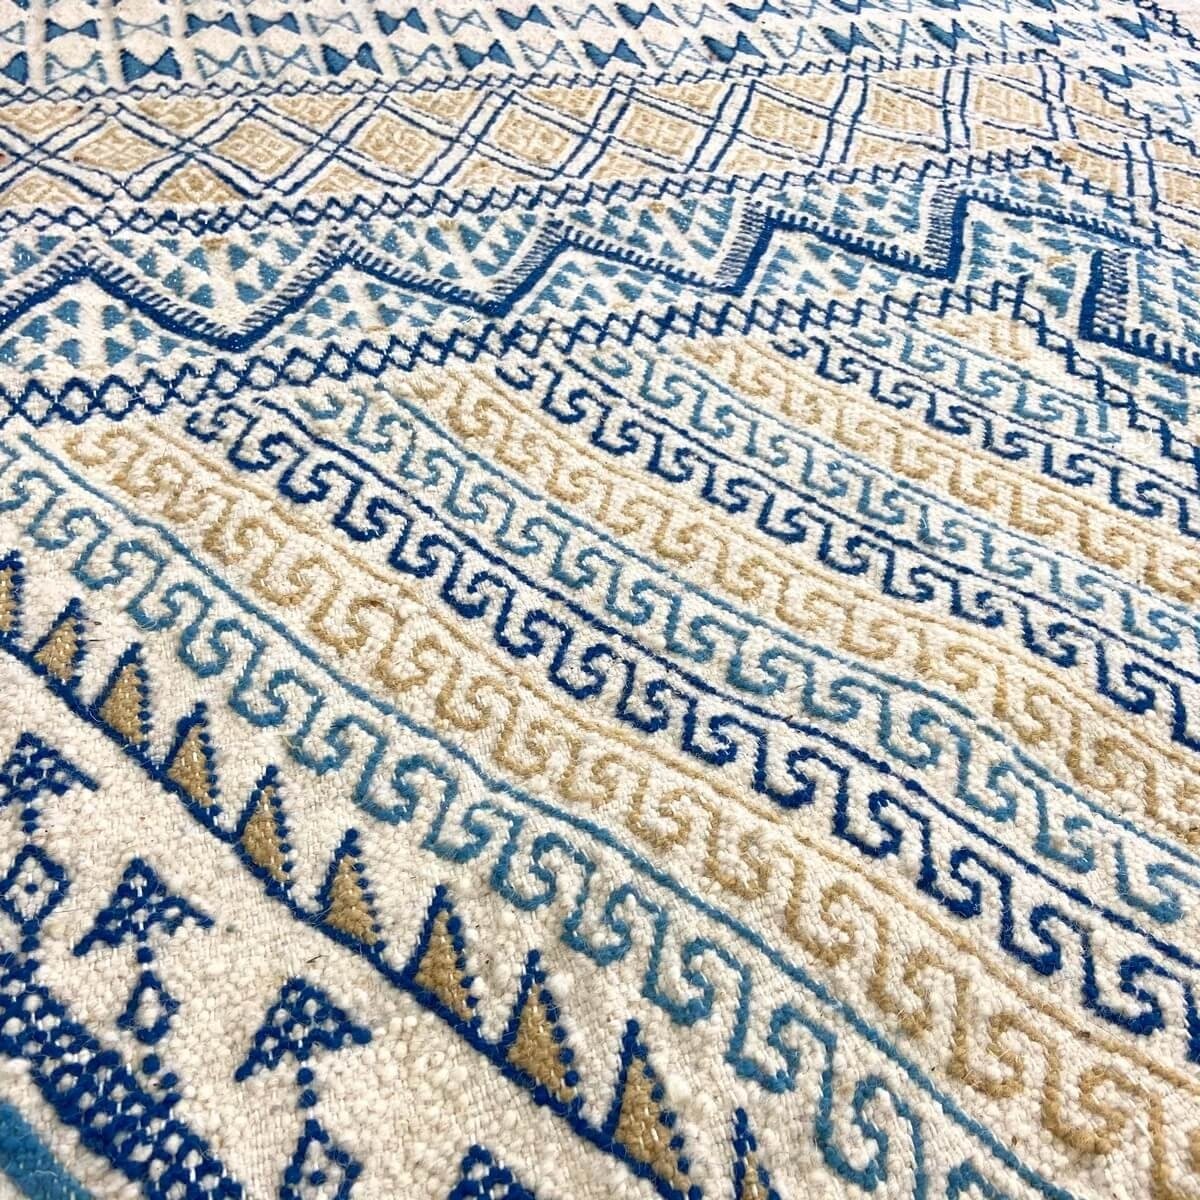 Berber tapijt Groot Tapijt Margoum Flouki 206x308 cm Blauw (Handgeweven, Wol, Tunesië) Tunesisch Margoum Tapijt uit de stad Kair